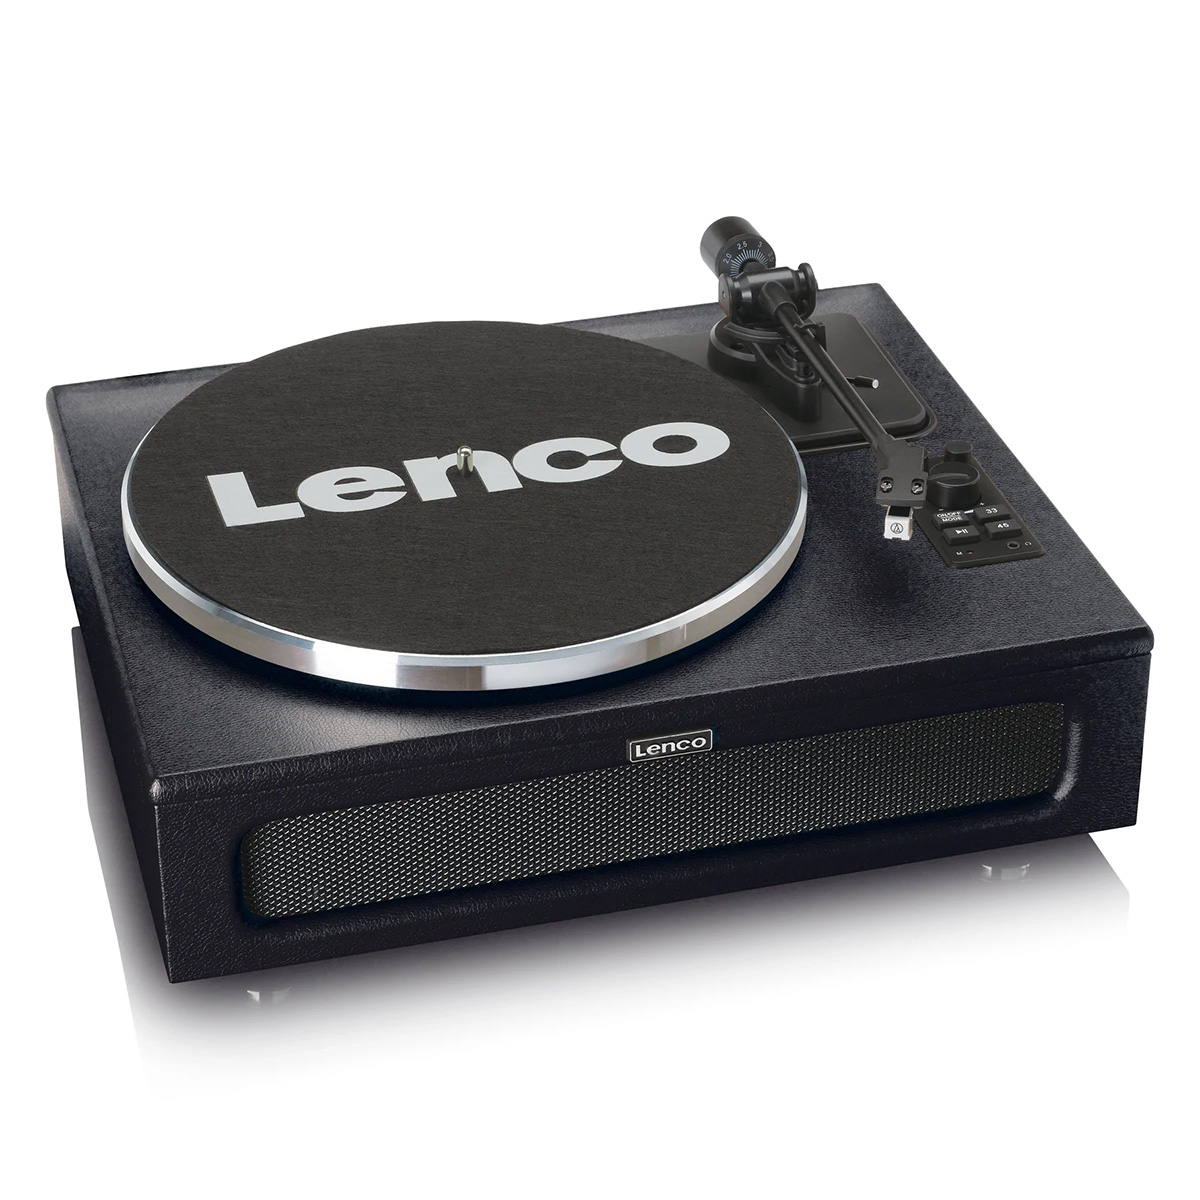 LENCO Lenco LS-430 Black Виниловый проигрыватель с 4 встроенными динамиками, Bluetooth и Tone & Pitch контролем